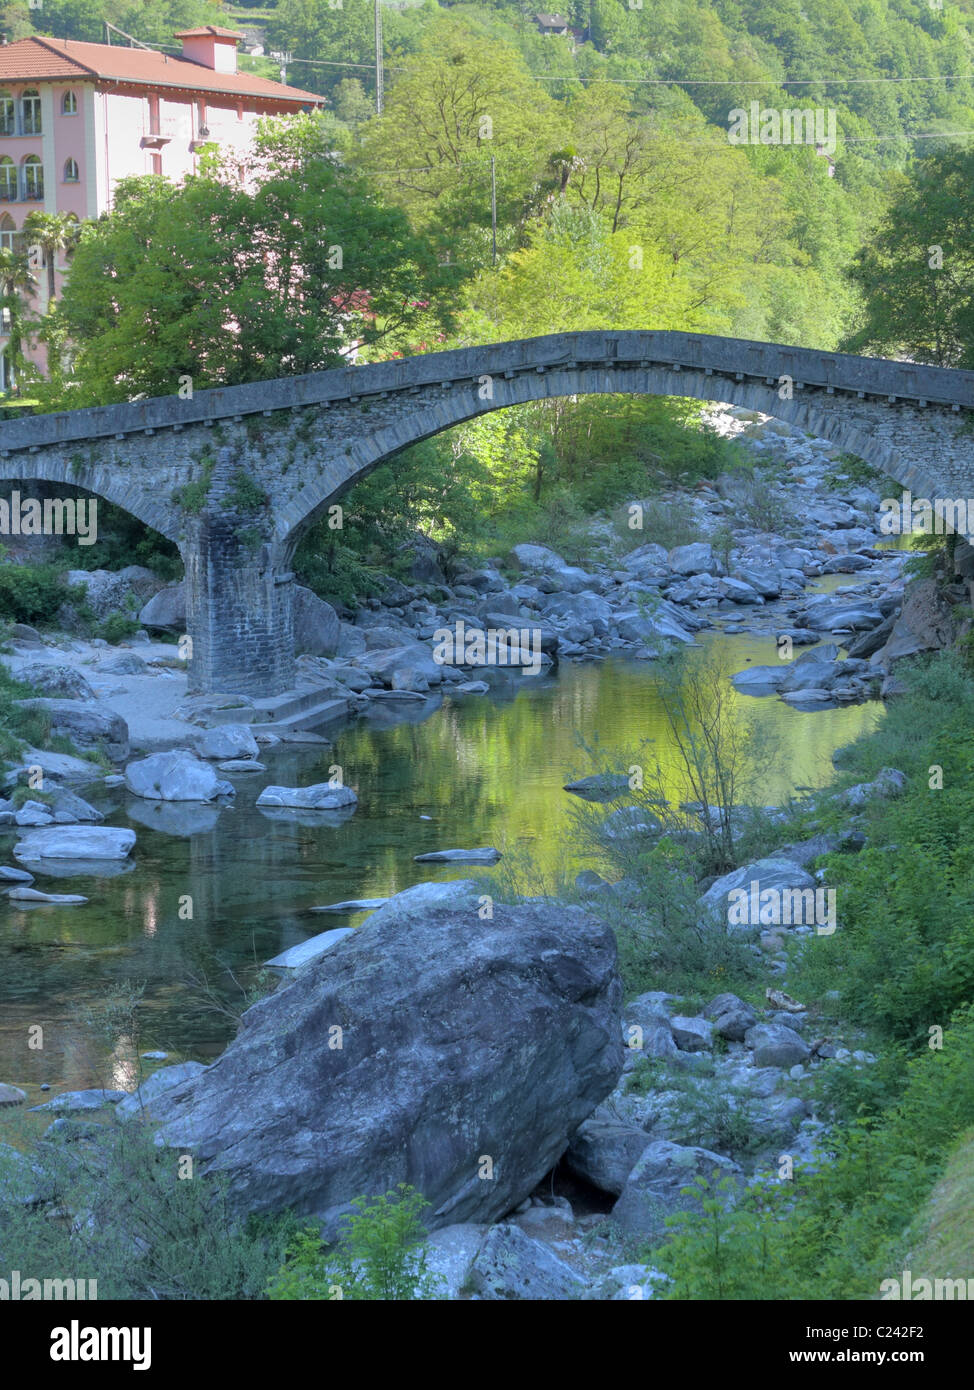 curved famous stone bridge crossing river Maggia in the Ticino mountain village Bignasco in Switzerland Stock Photo